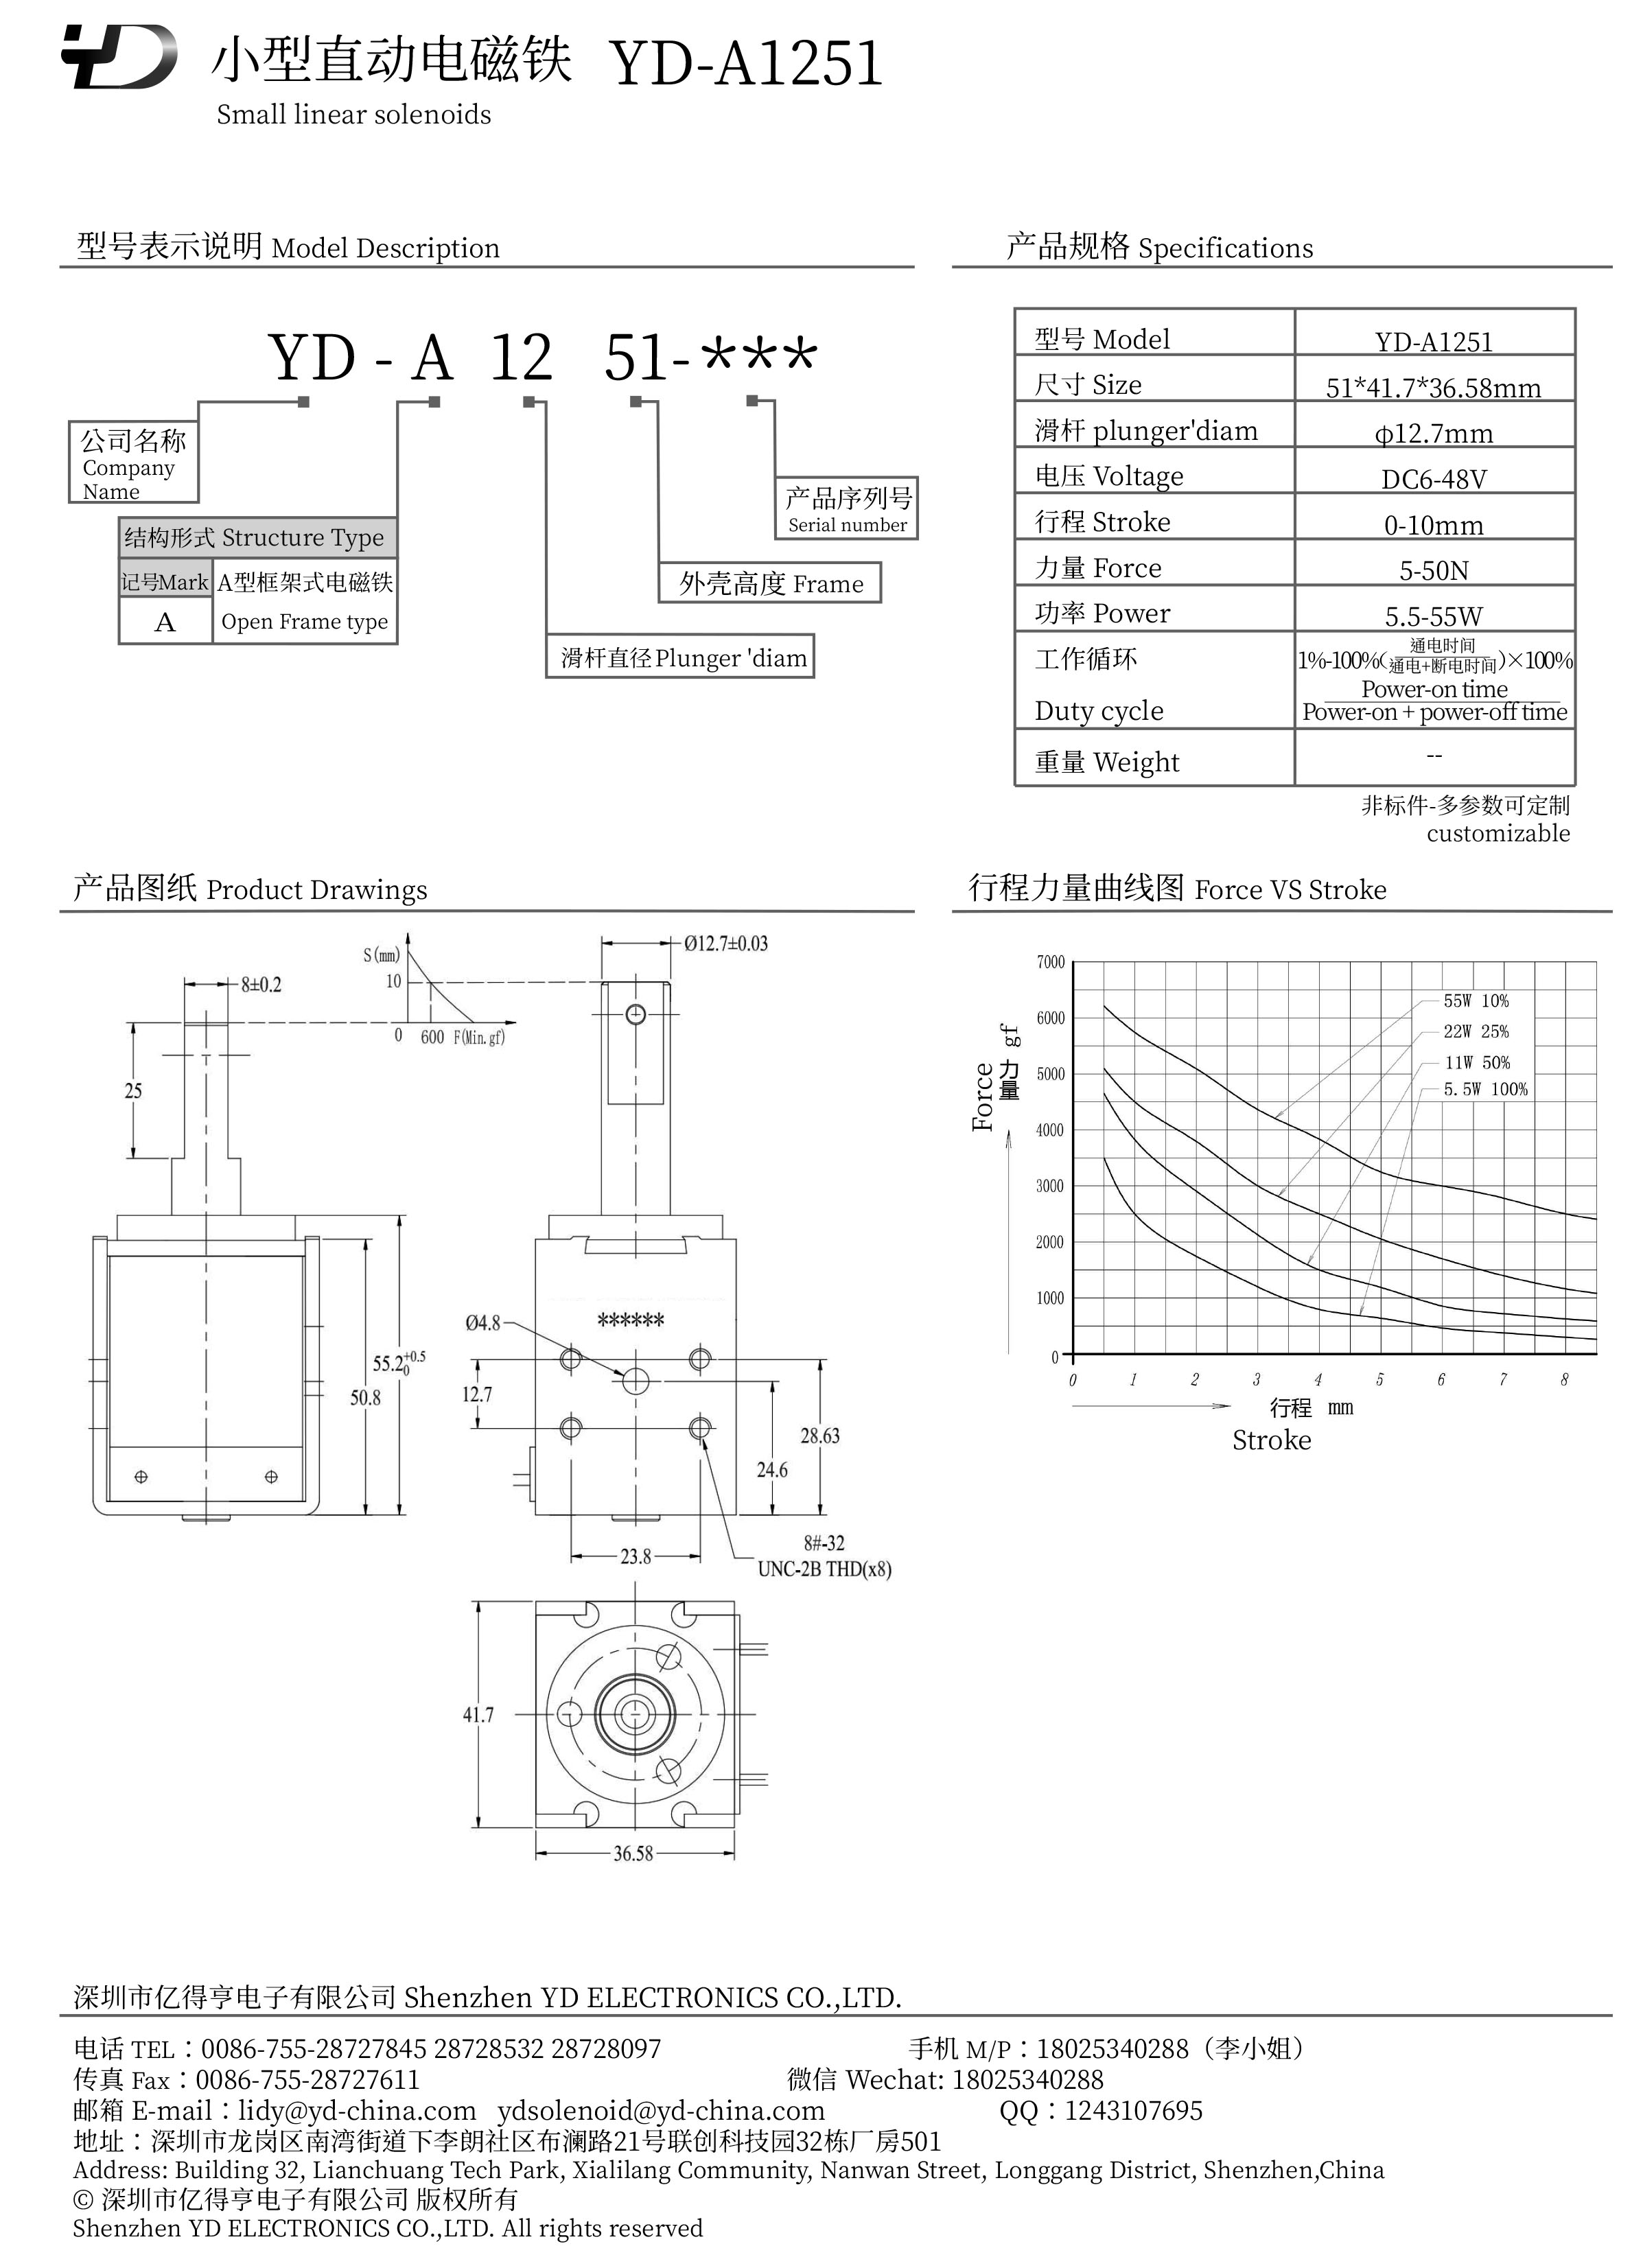 YD-A1251-PDF.jpg